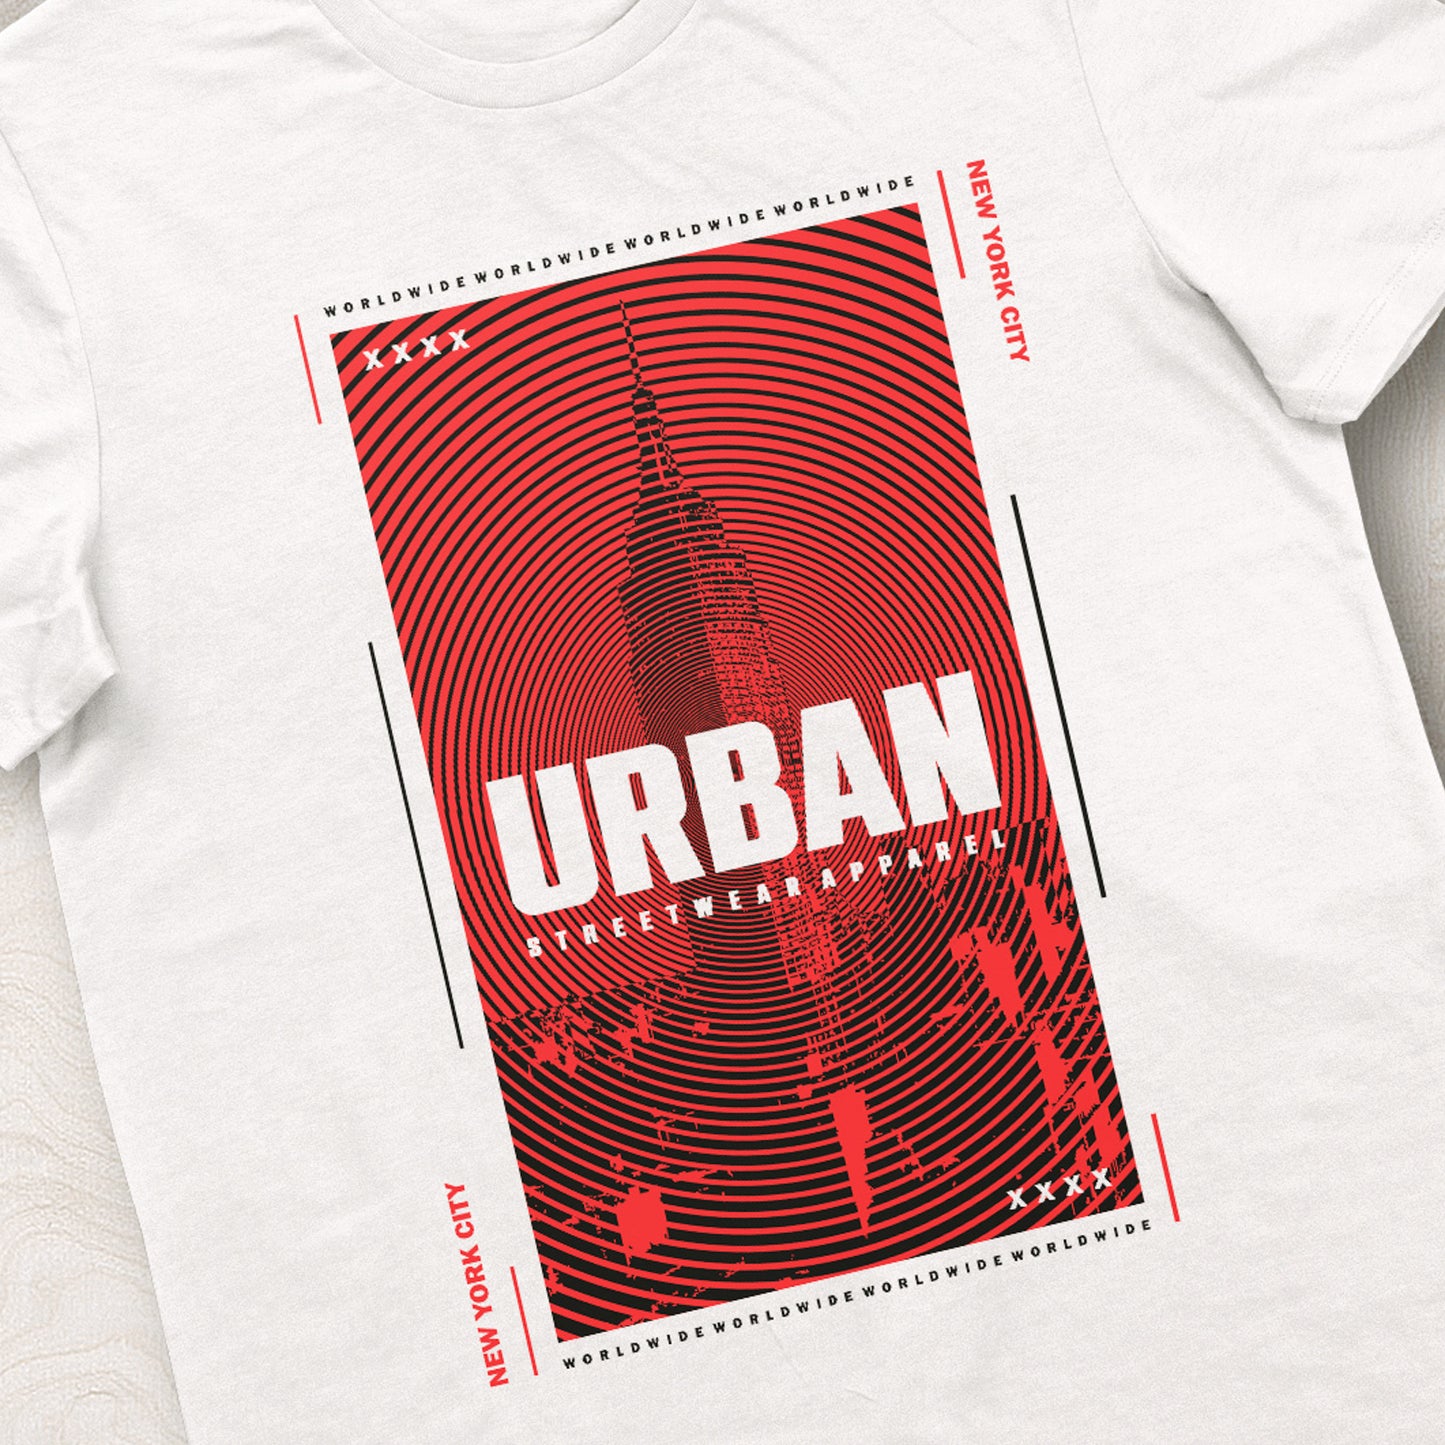 NYC Urban Tshirt Unisex